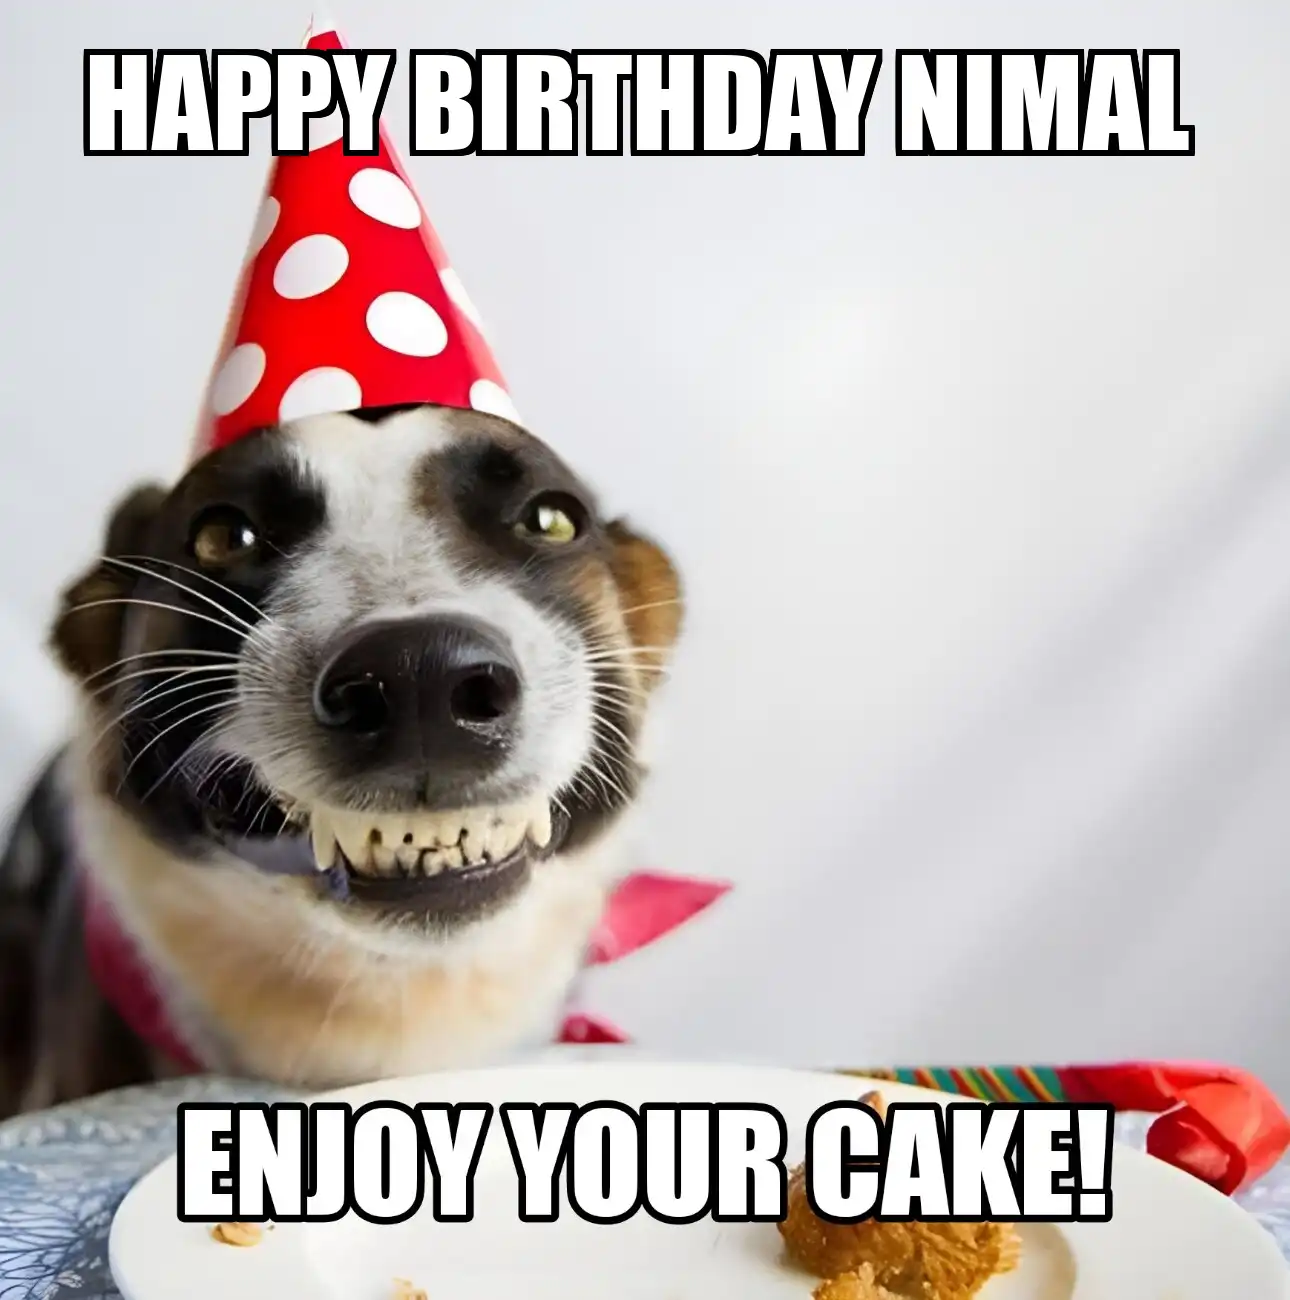 Happy Birthday Nimal Enjoy Your Cake Dog Meme